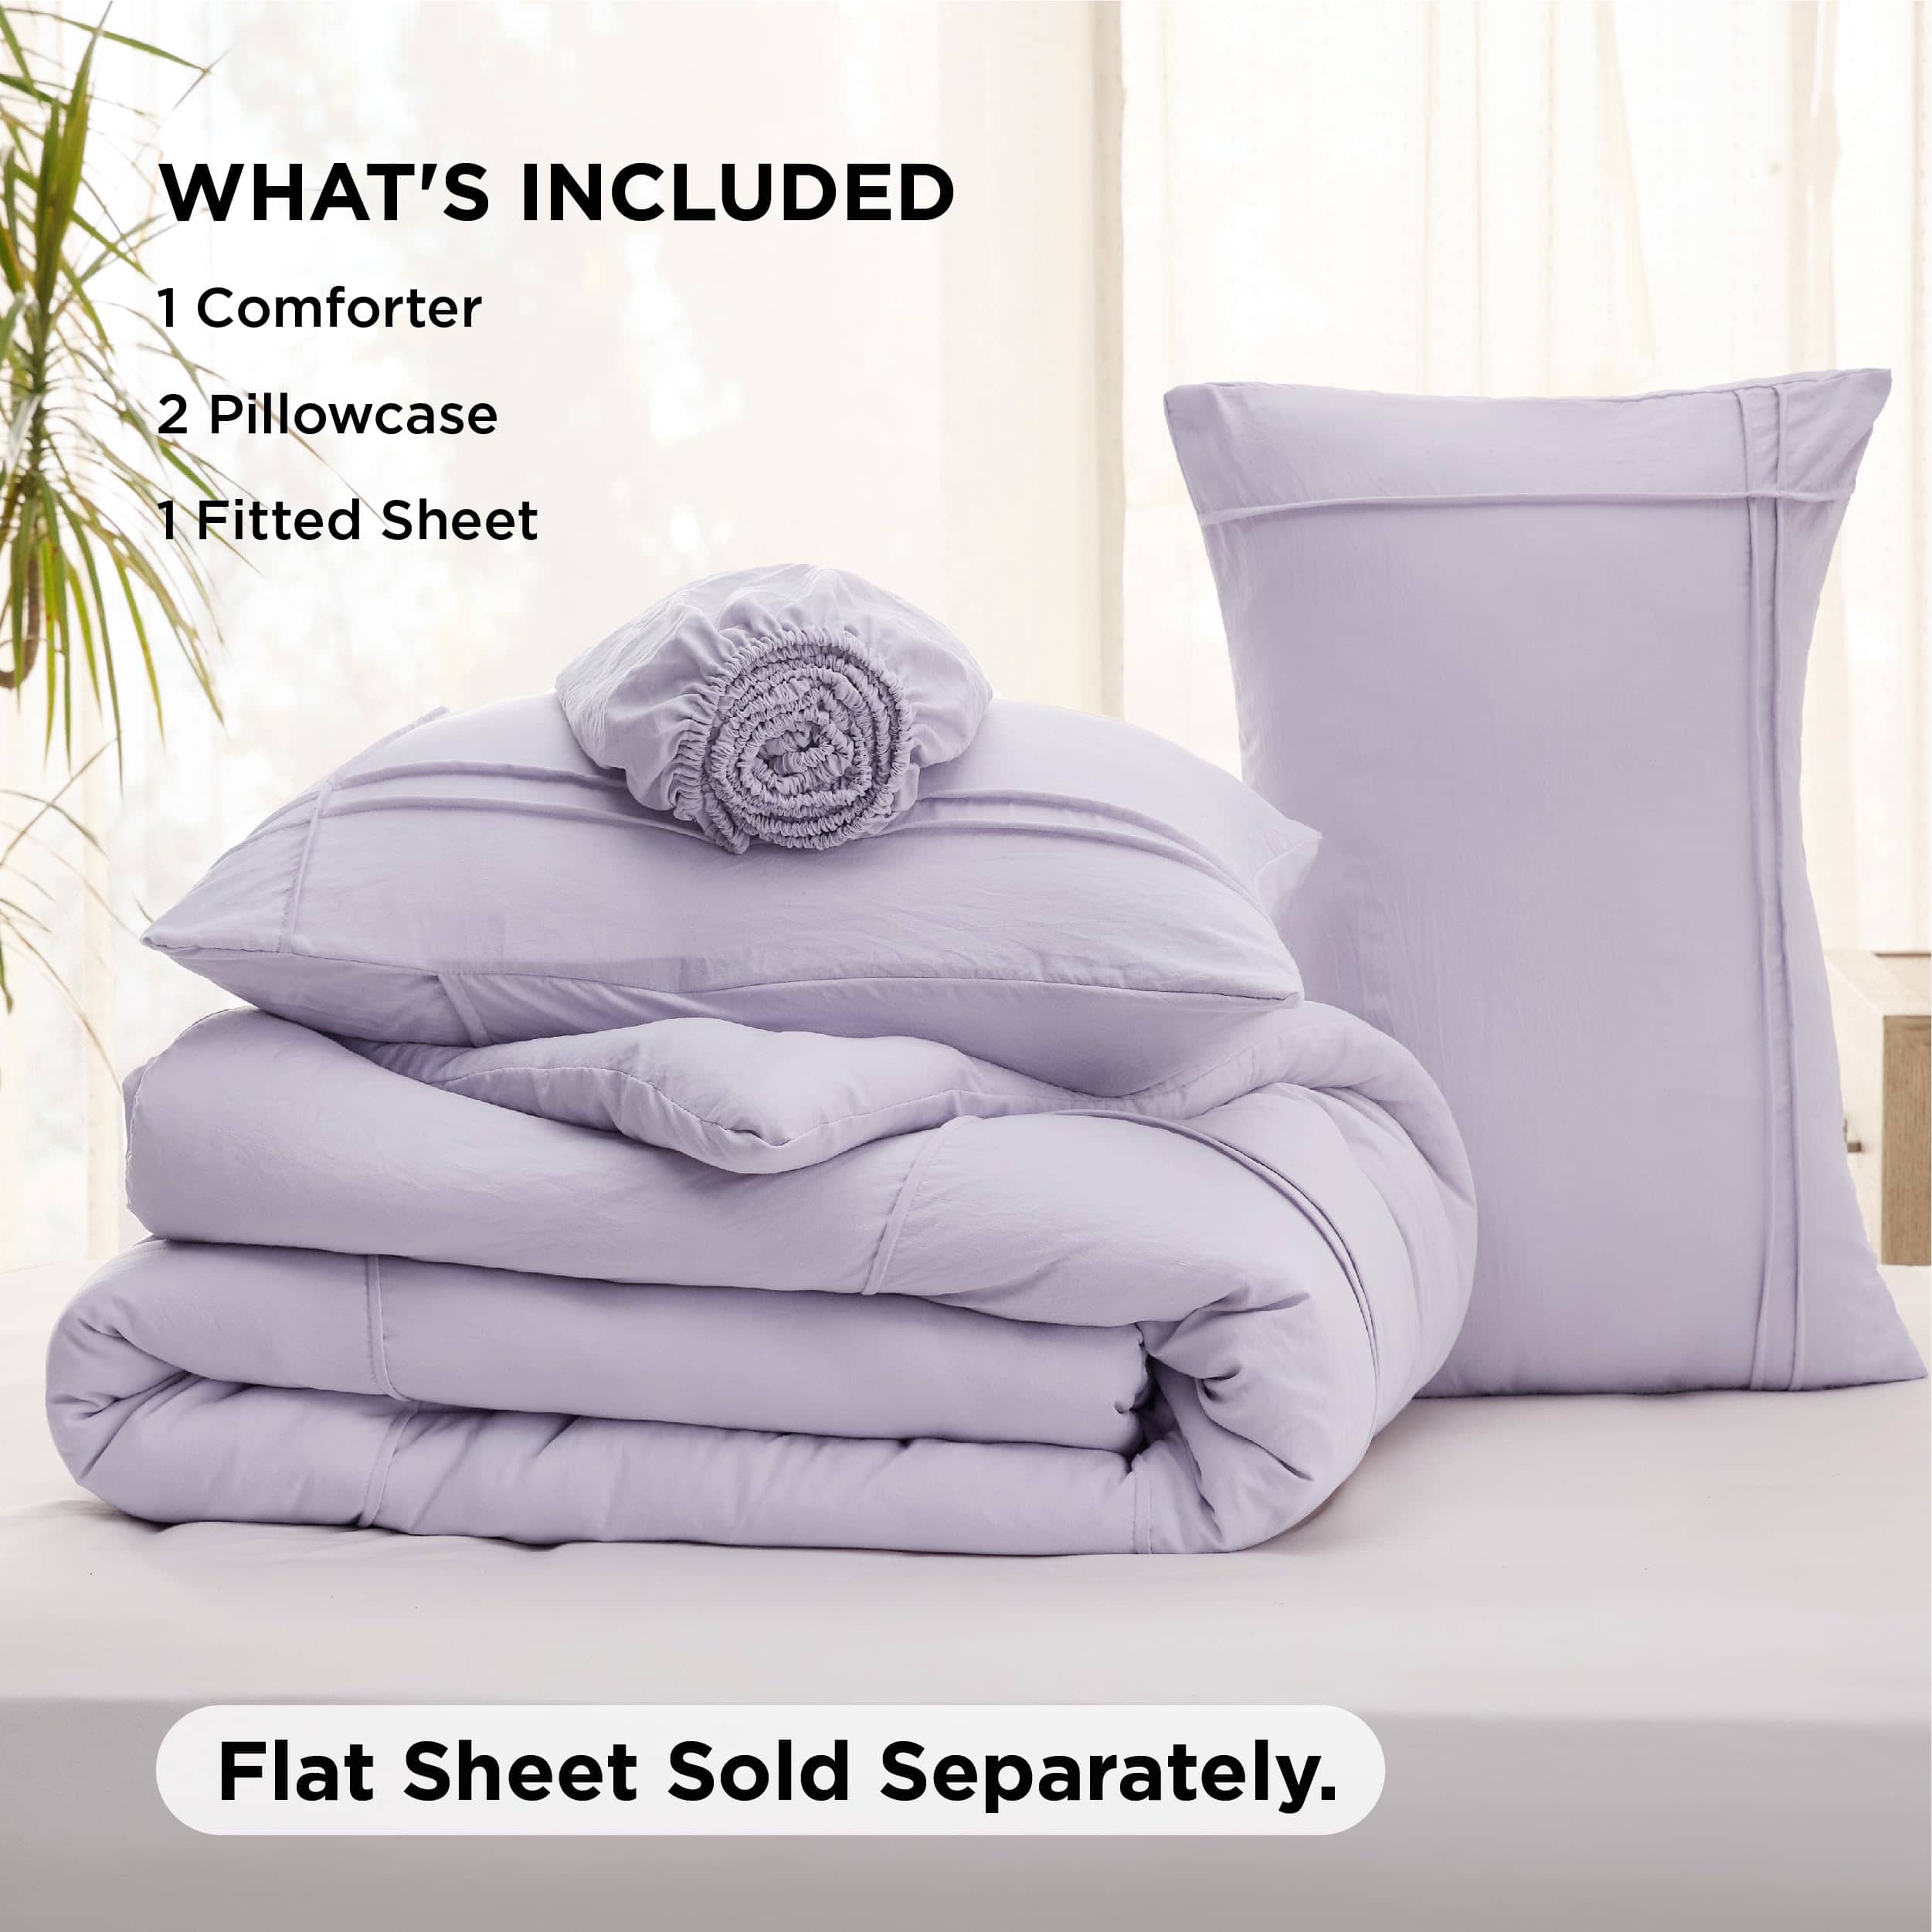 Bedsure Pinch Pleat Comforter set